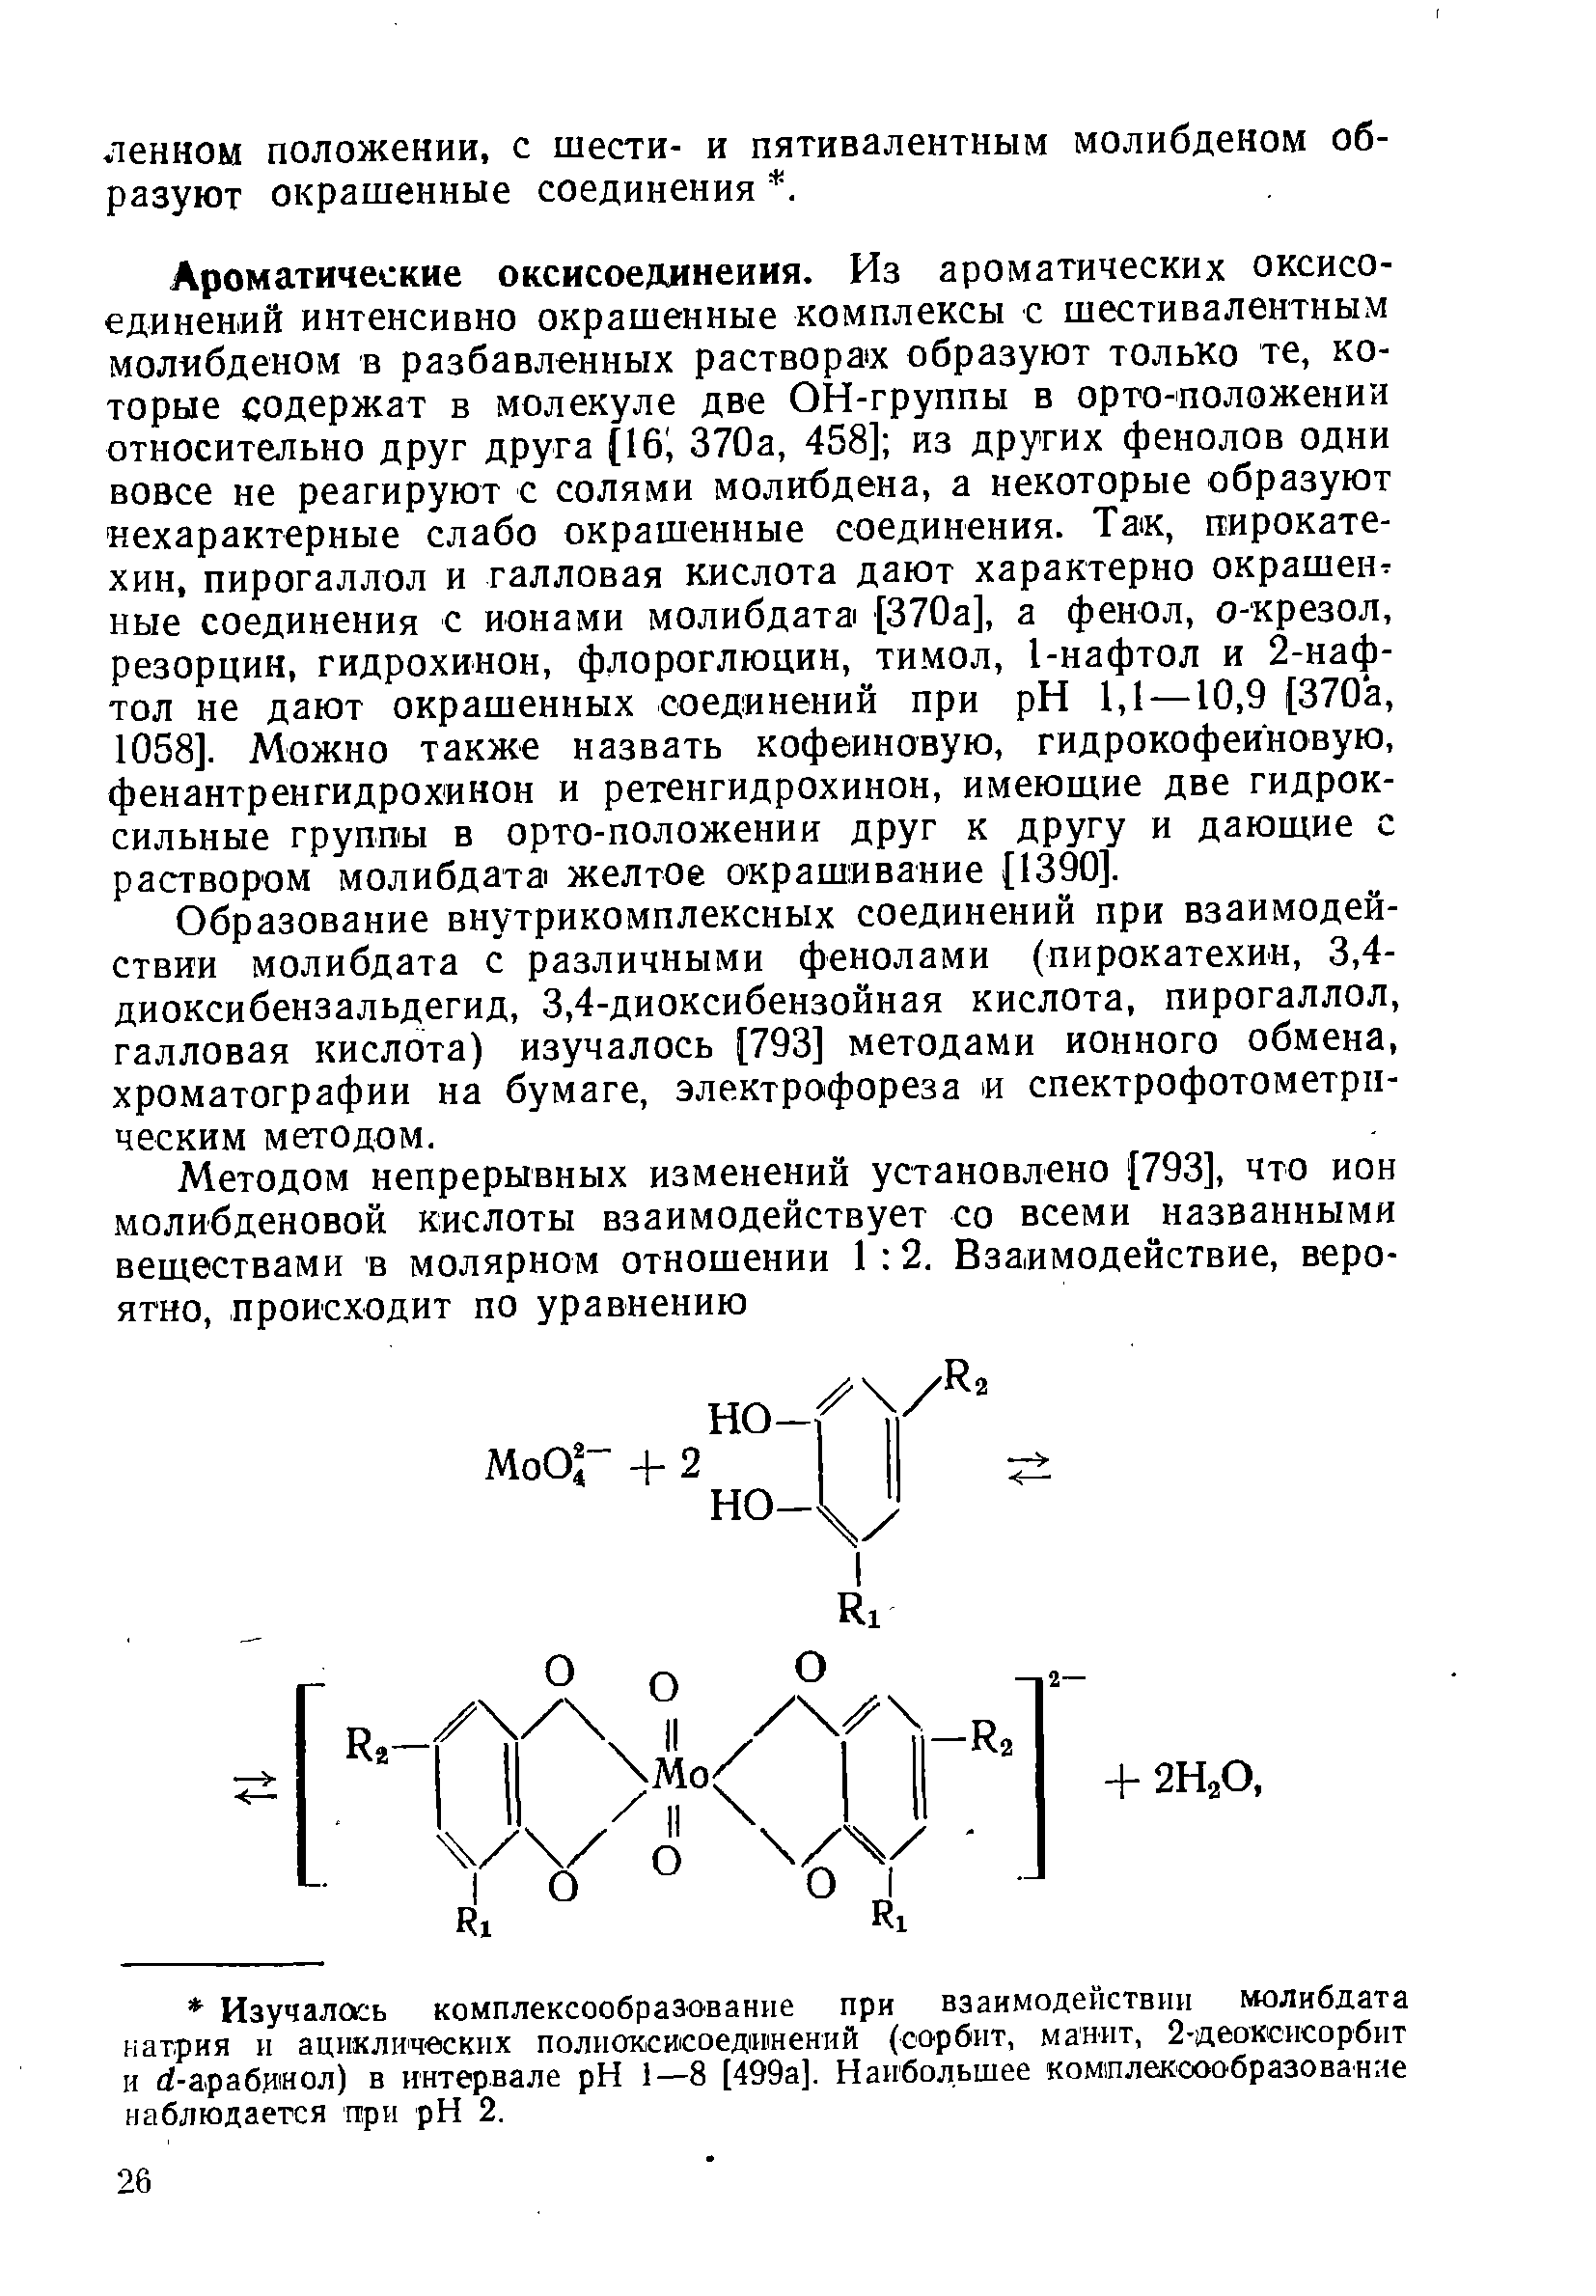 Образование внутрикомплексных соединений при взаимодействии молибдата с различными фенолами (пирокатехин, 3,4-диоксибензальдегид, 3,4-диоксибензойная кислота, пирогаллол, галловая кислота) изучалось [793] методами ионного обмена, хроматографии на бумаге, электрофореза и спектрофотометрп-ческим методом.